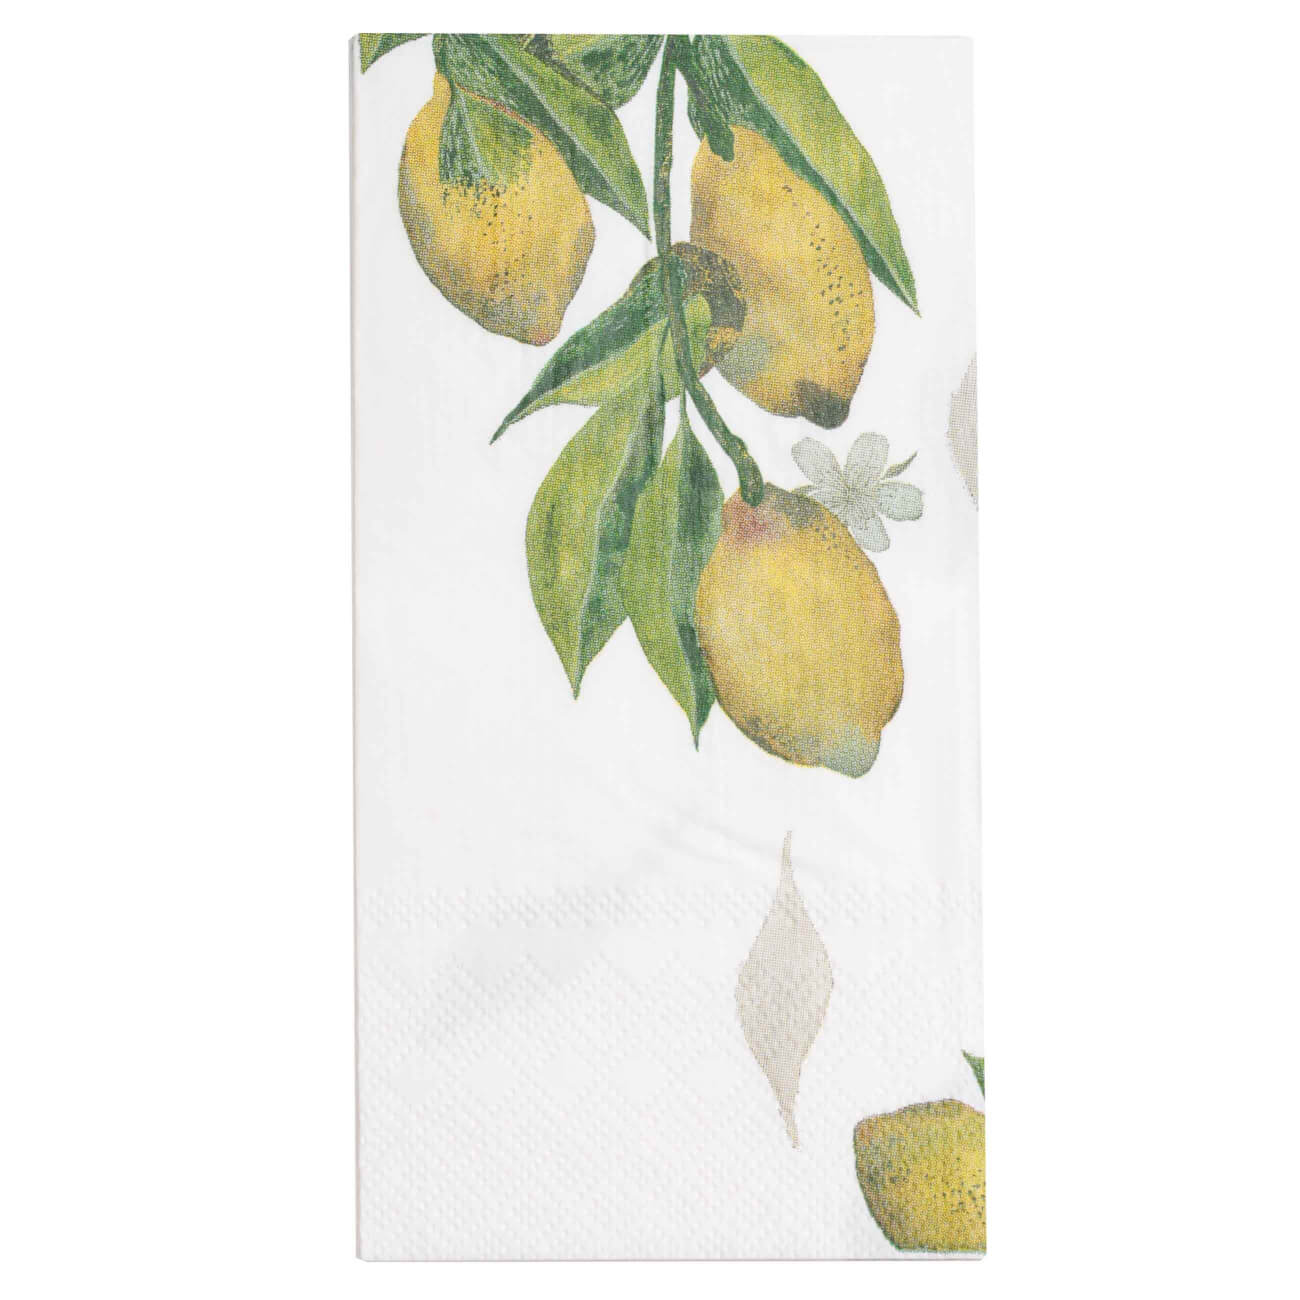 Салфетки бумажные, 33х33 см, 20 шт, прямоугольные, белые, Лимоны на ветке, Sicily in bloom изображение № 1